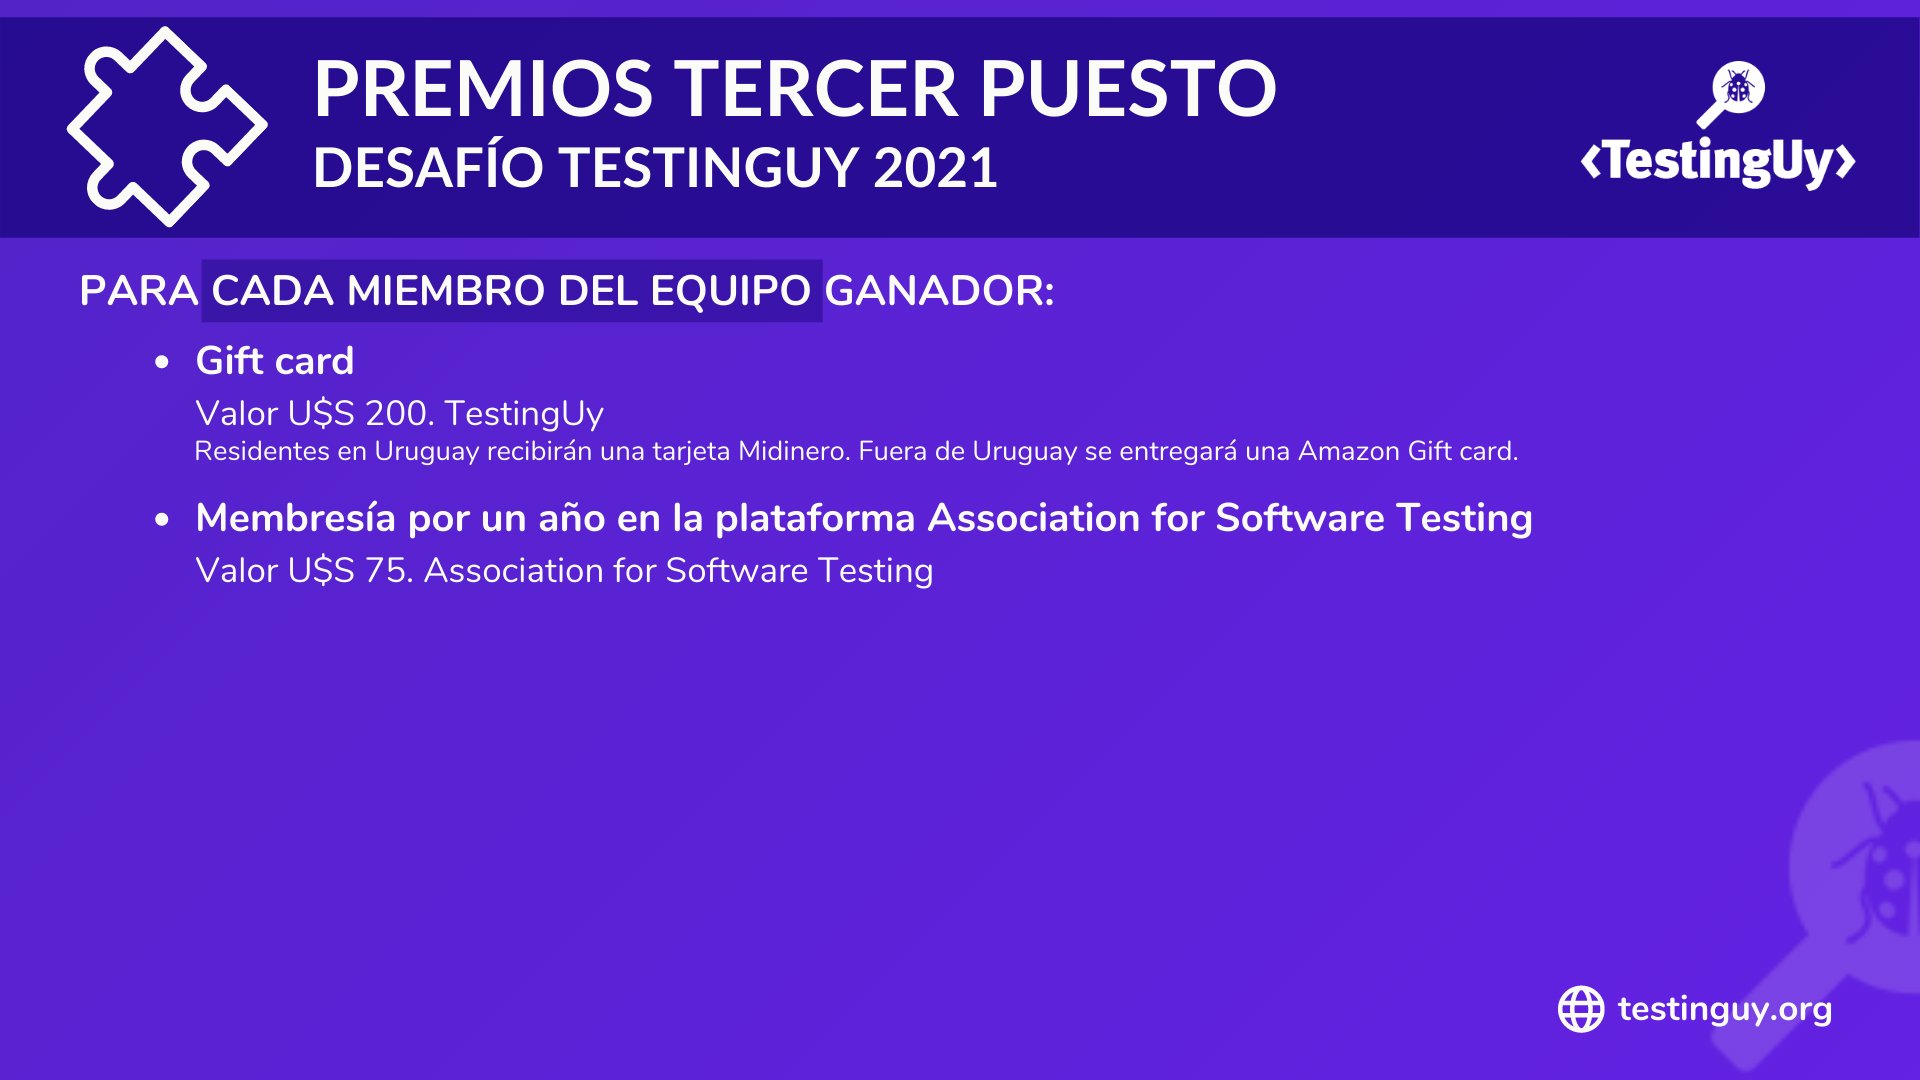 Desafio TestingUy 2021 - Premios Tercer puesto